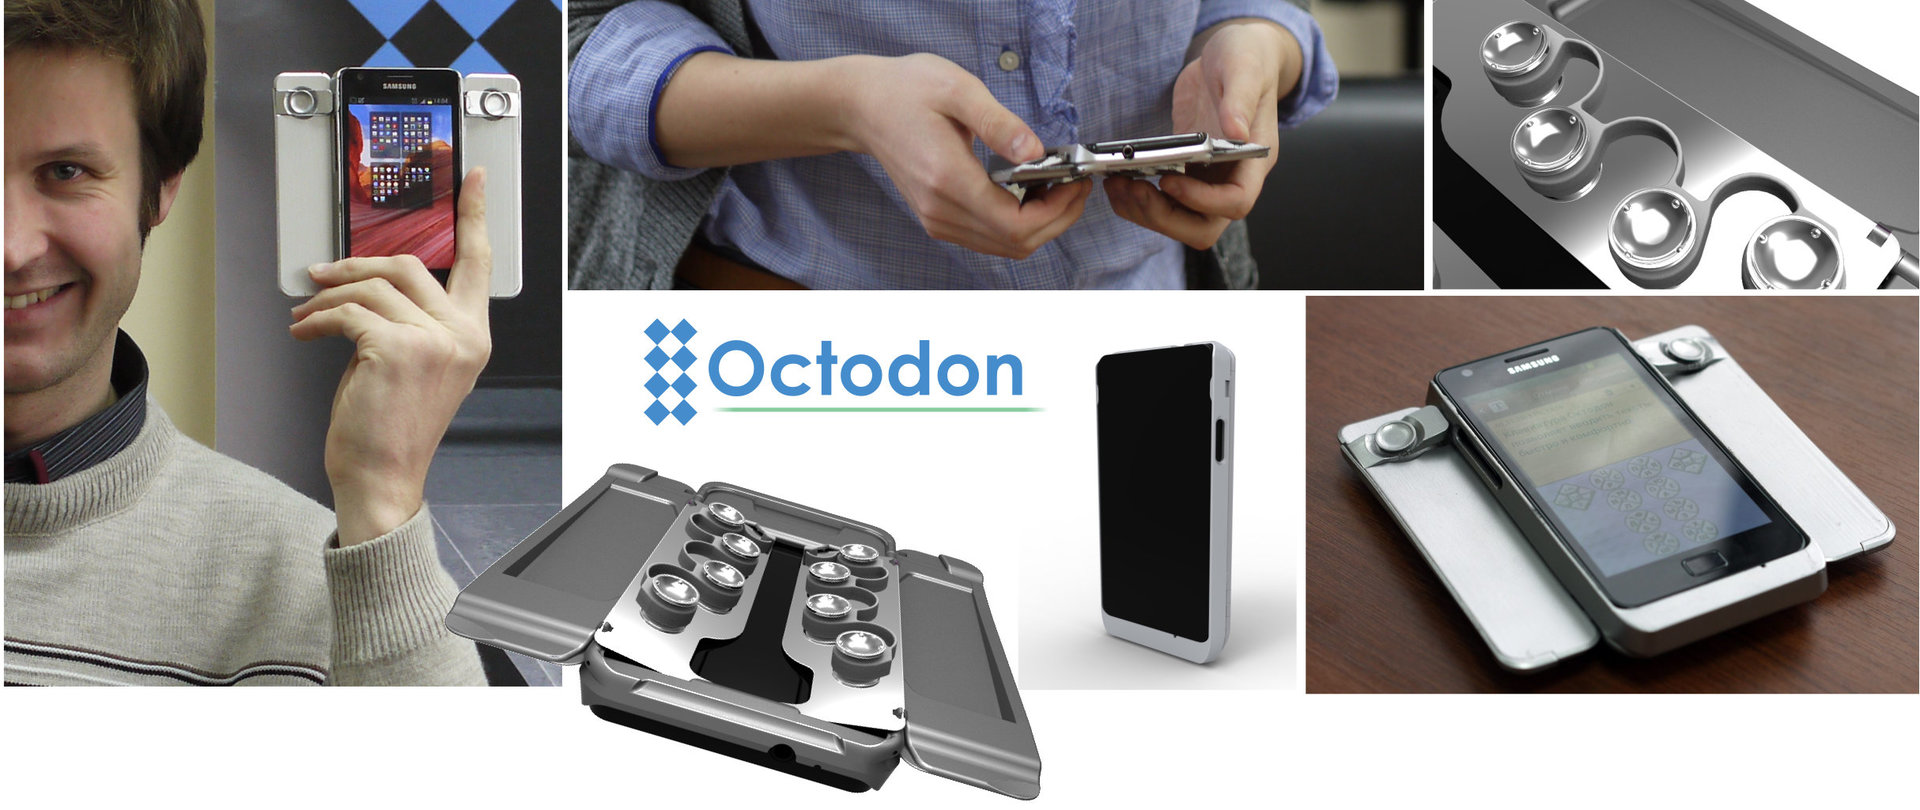 Октодон: Какой должна быть удобная клавиатура для смартфонов